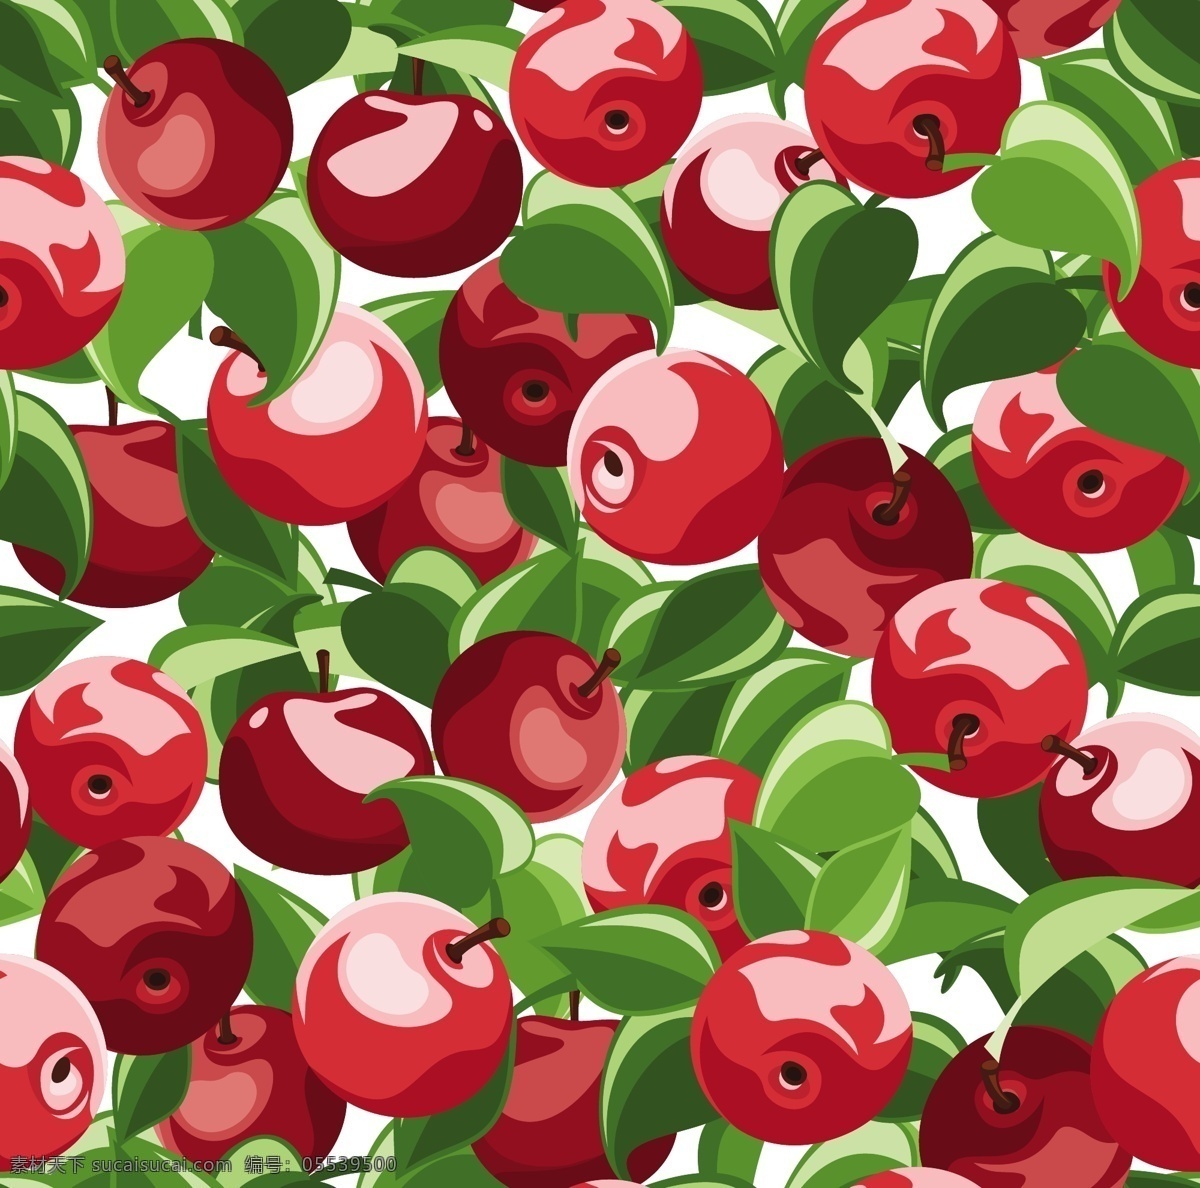 手绘苹果图 可爱卡通 手绘 食物 水果 苹果 餐饮美食 生活百科 矢量素材 红色